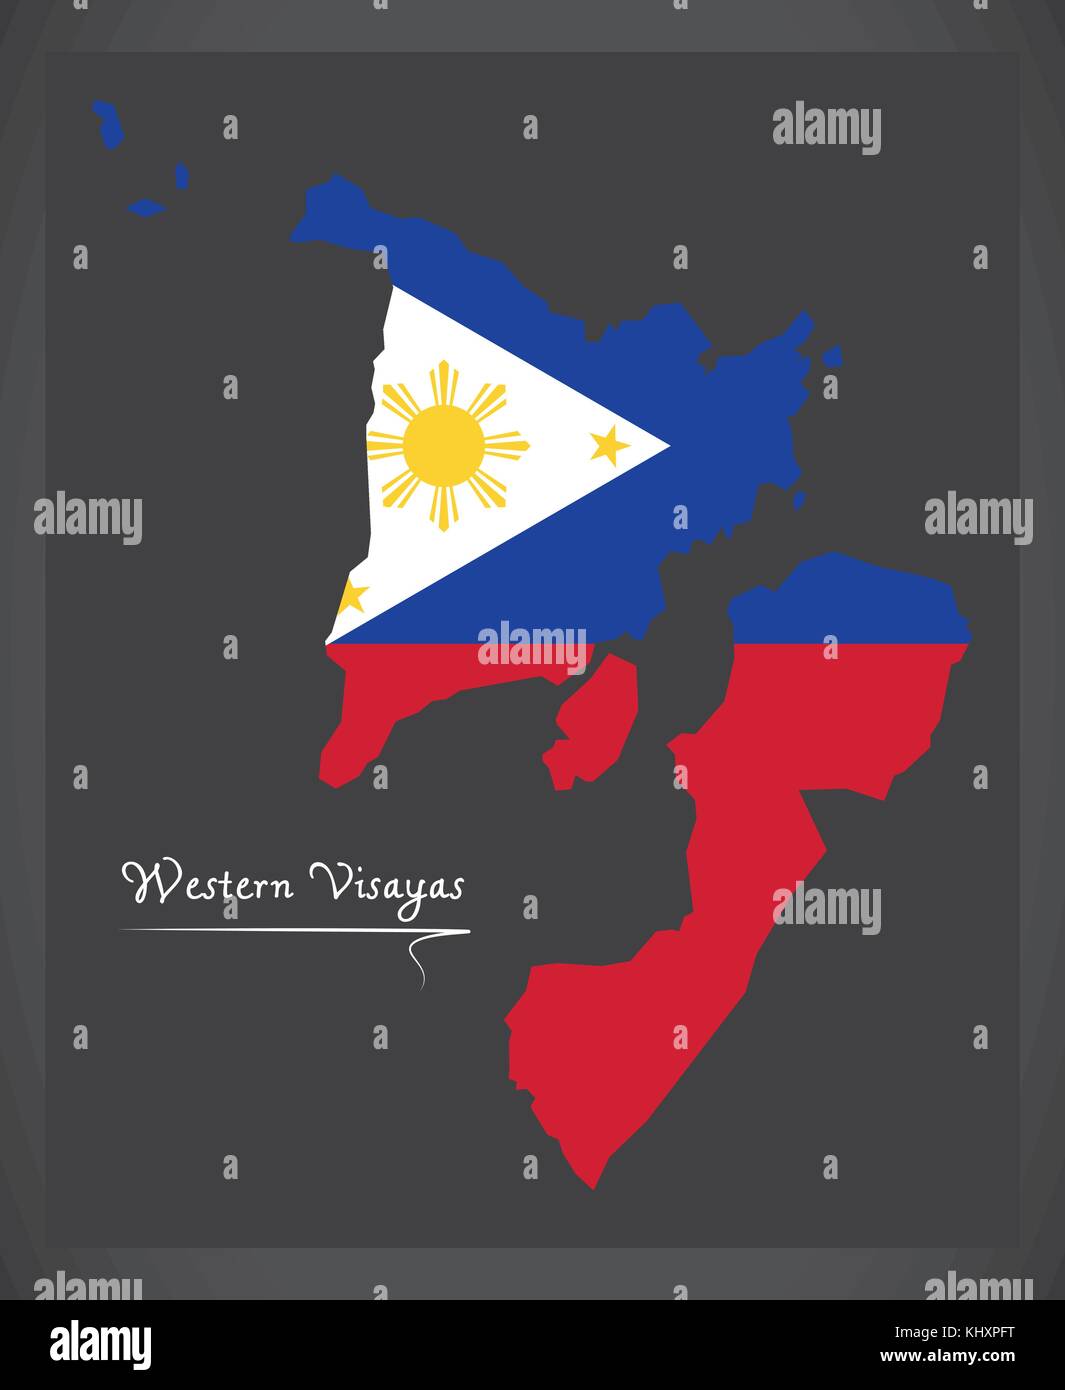 Western visayas Karte der Philippinen mit Philippine National flag Abbildung Stock Vektor